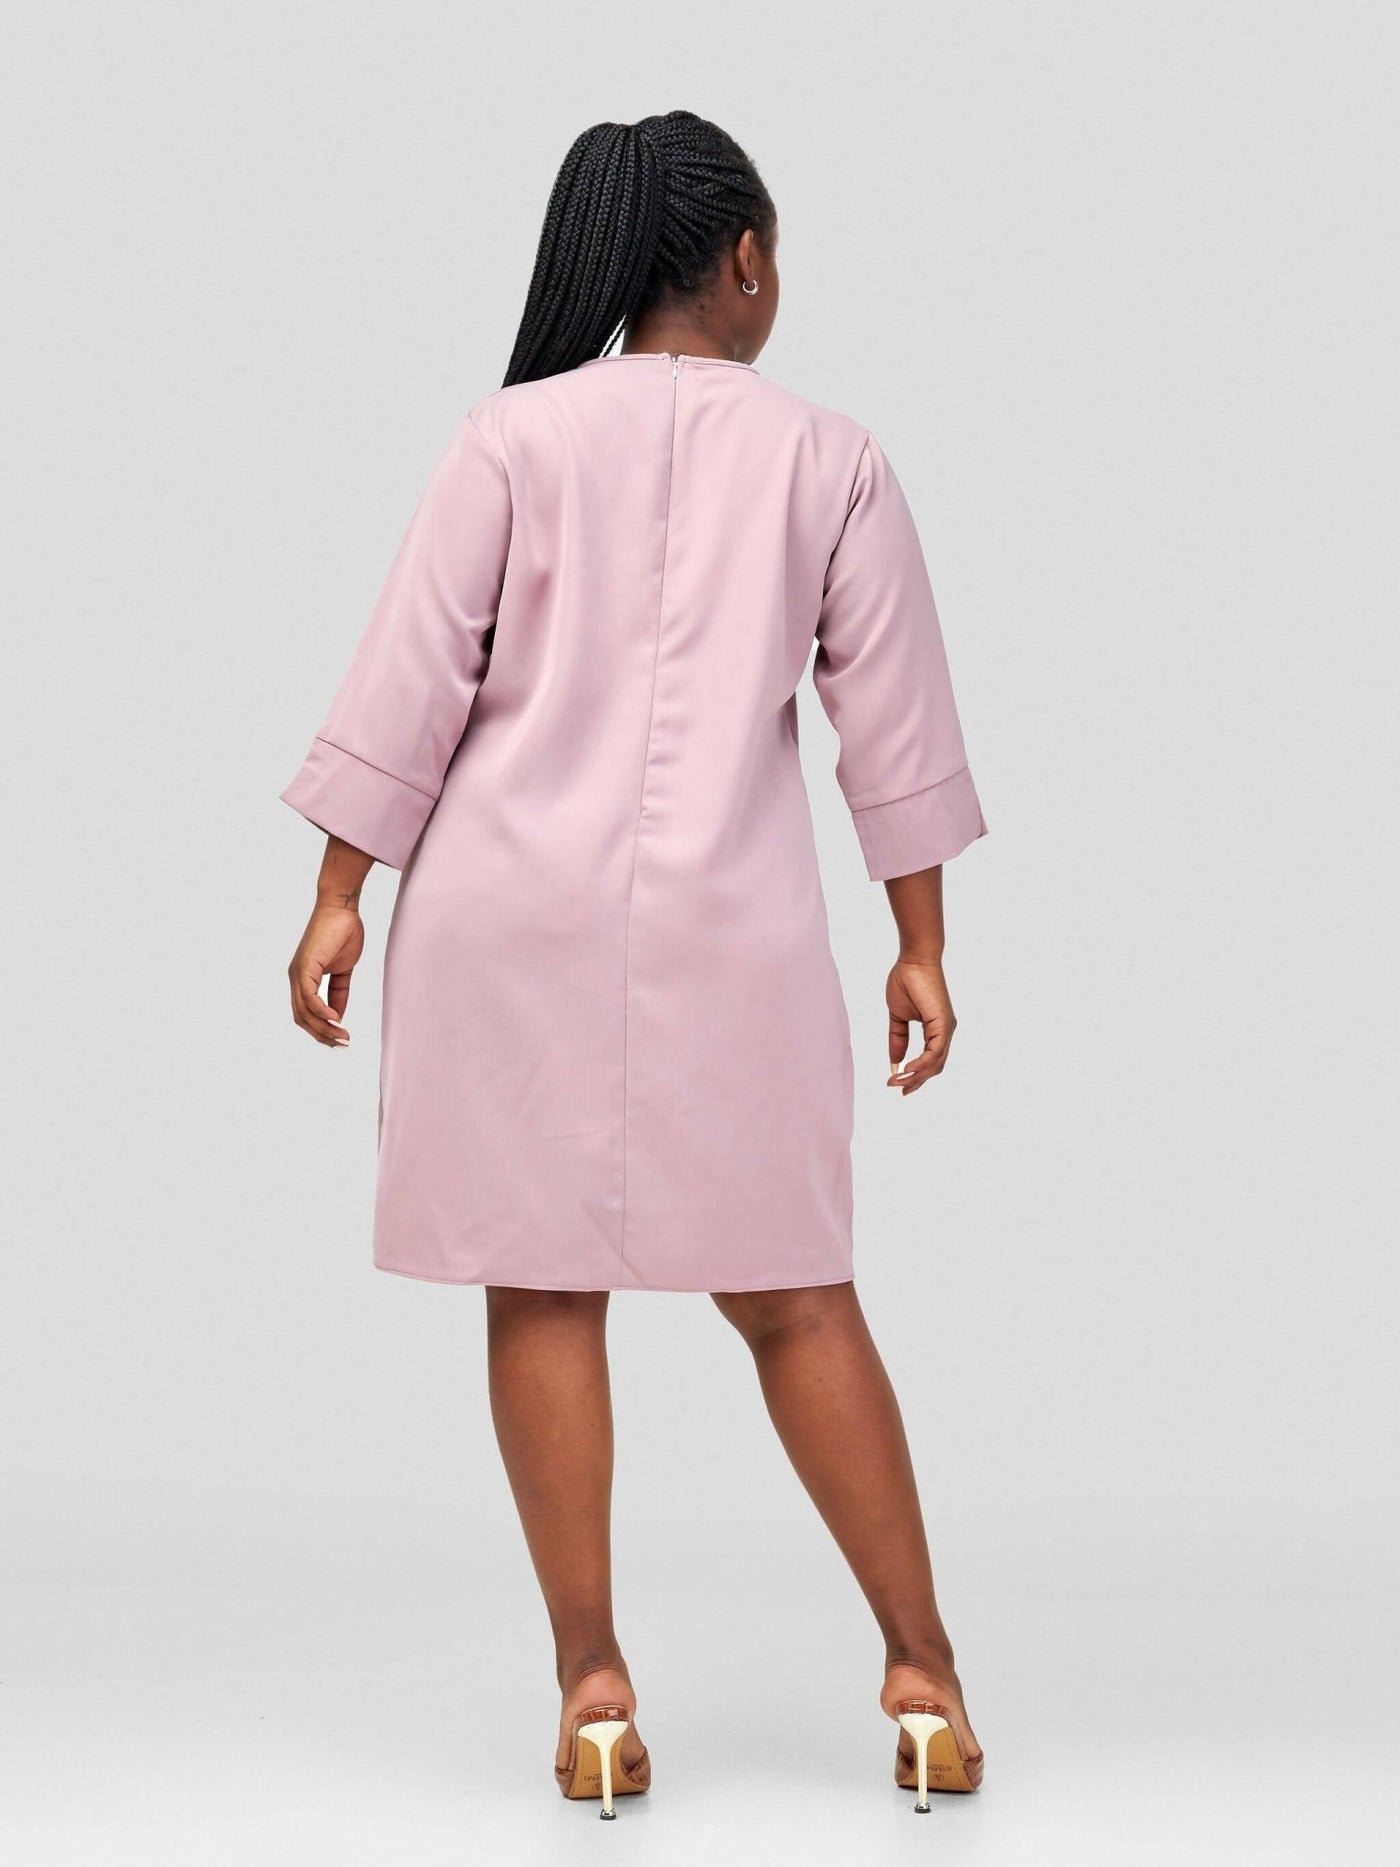 HOT Simuli Official Dress - Peach - Shopzetu